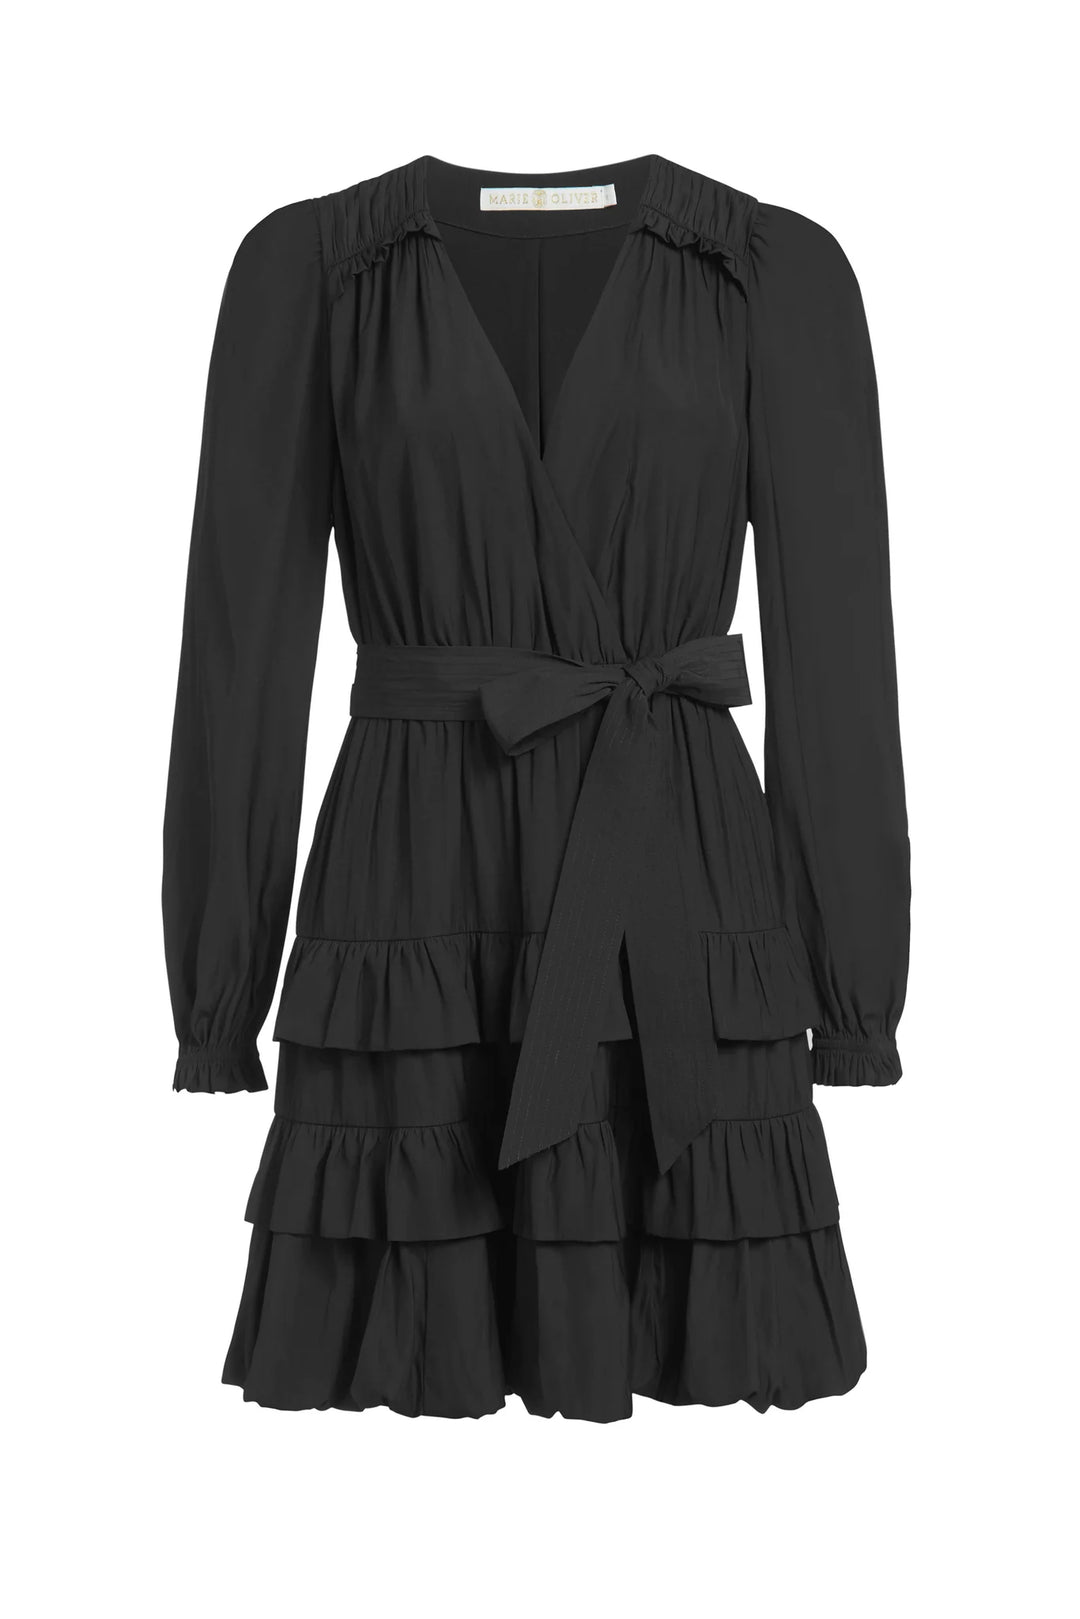 Marie Oliver Wynona Dress -Black